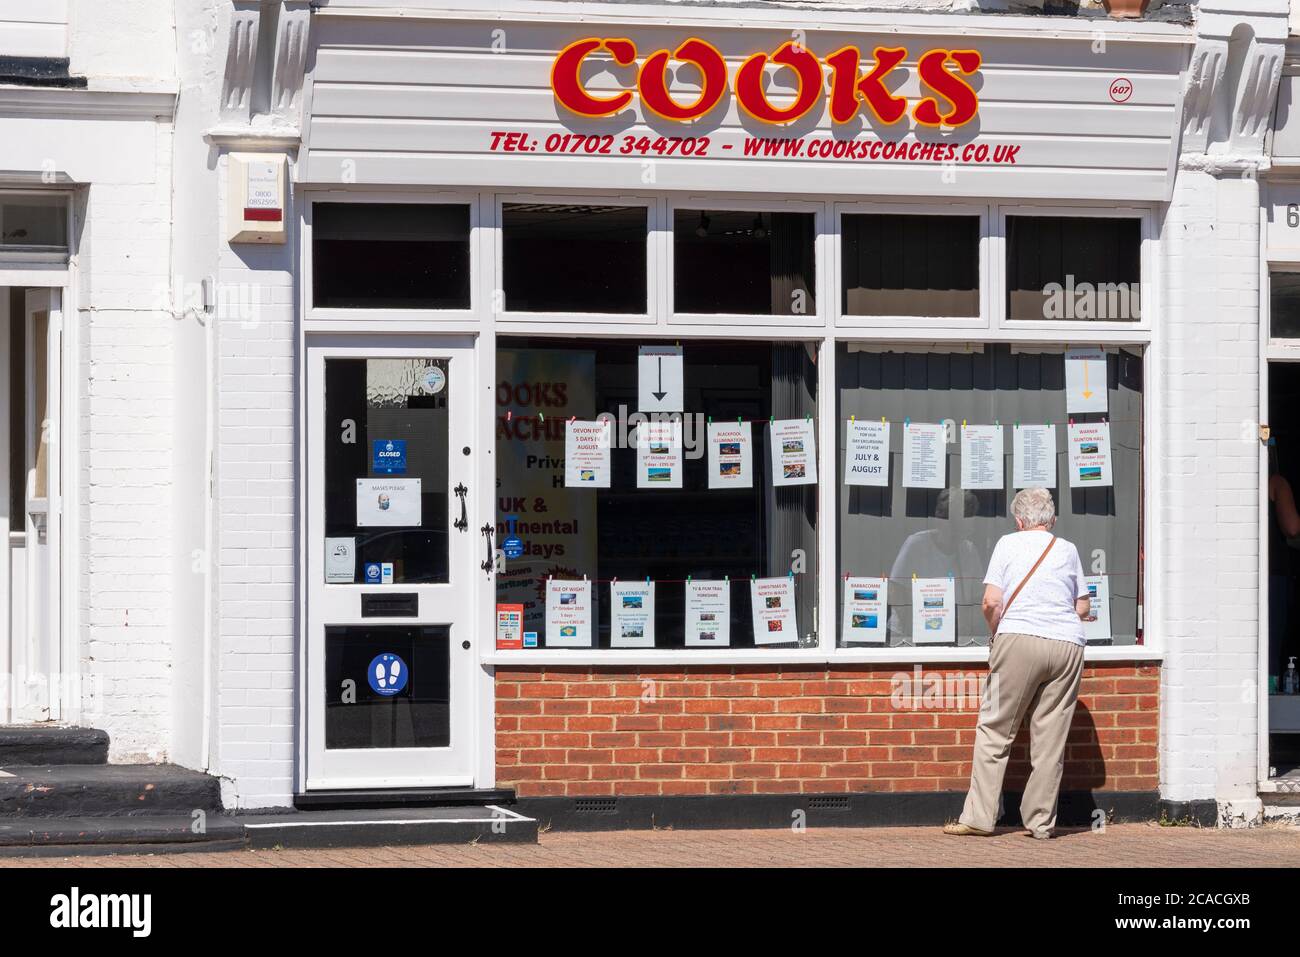 Cooks Coaches Büro in Westcliff on Sea, Essex, Großbritannien, mit älteren weiblichen Blick auf die Schaufenster. Urlaub und Tagesausflüge Reise Business Stockfoto